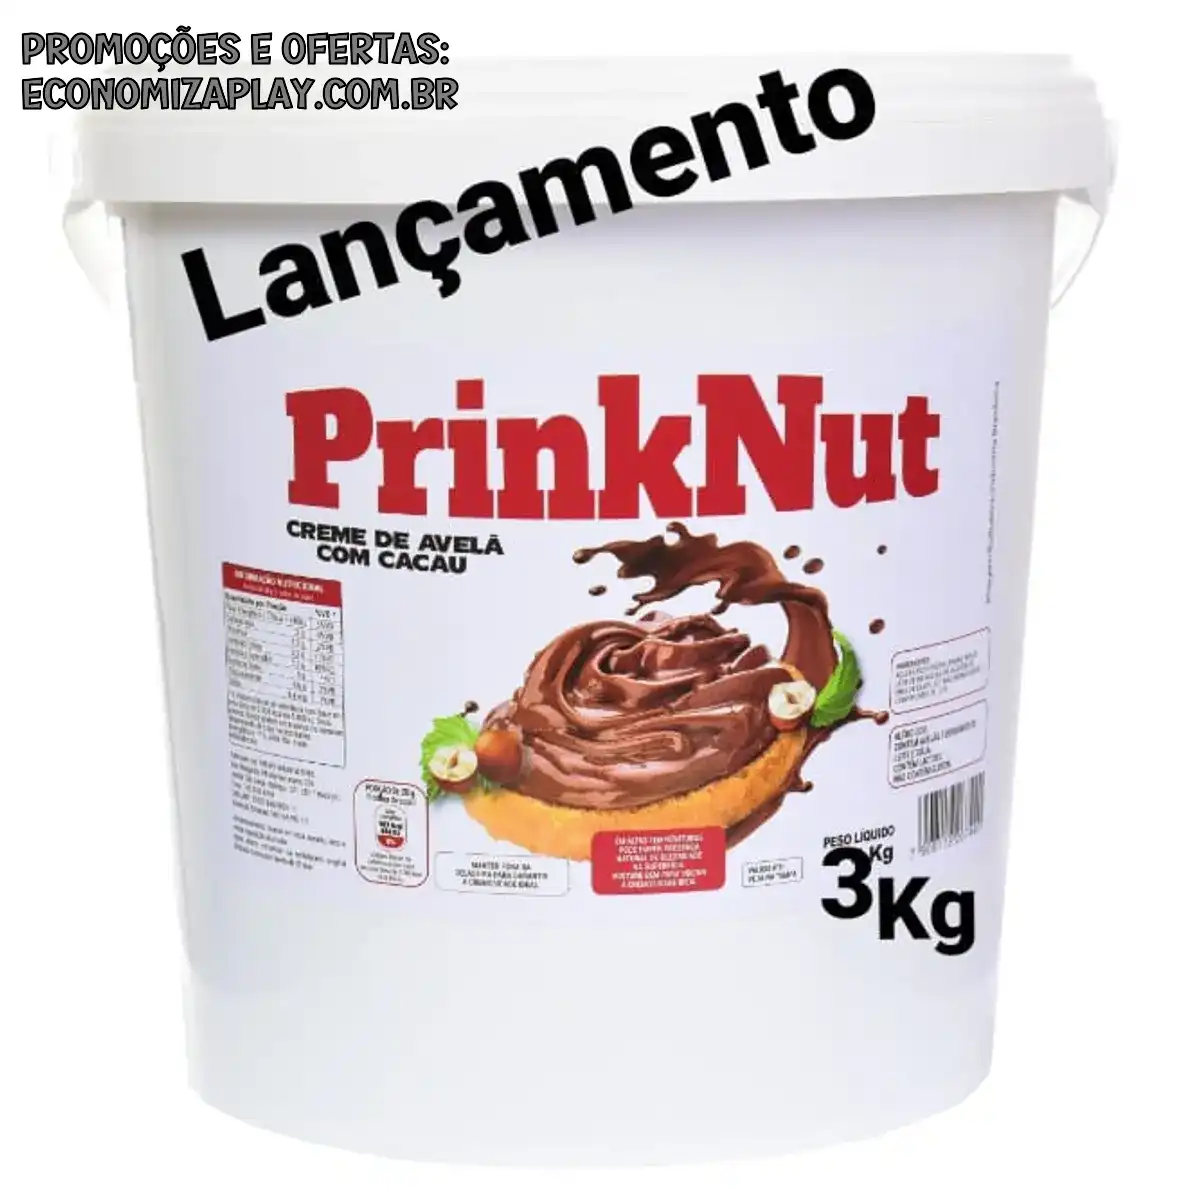 CREME DE AVELÃ COM CACAU PRINKNUT BALDE DE 3 KG Produto simillar a Nutella ideal para confeitaria padaria sorveteria e casas de açaí